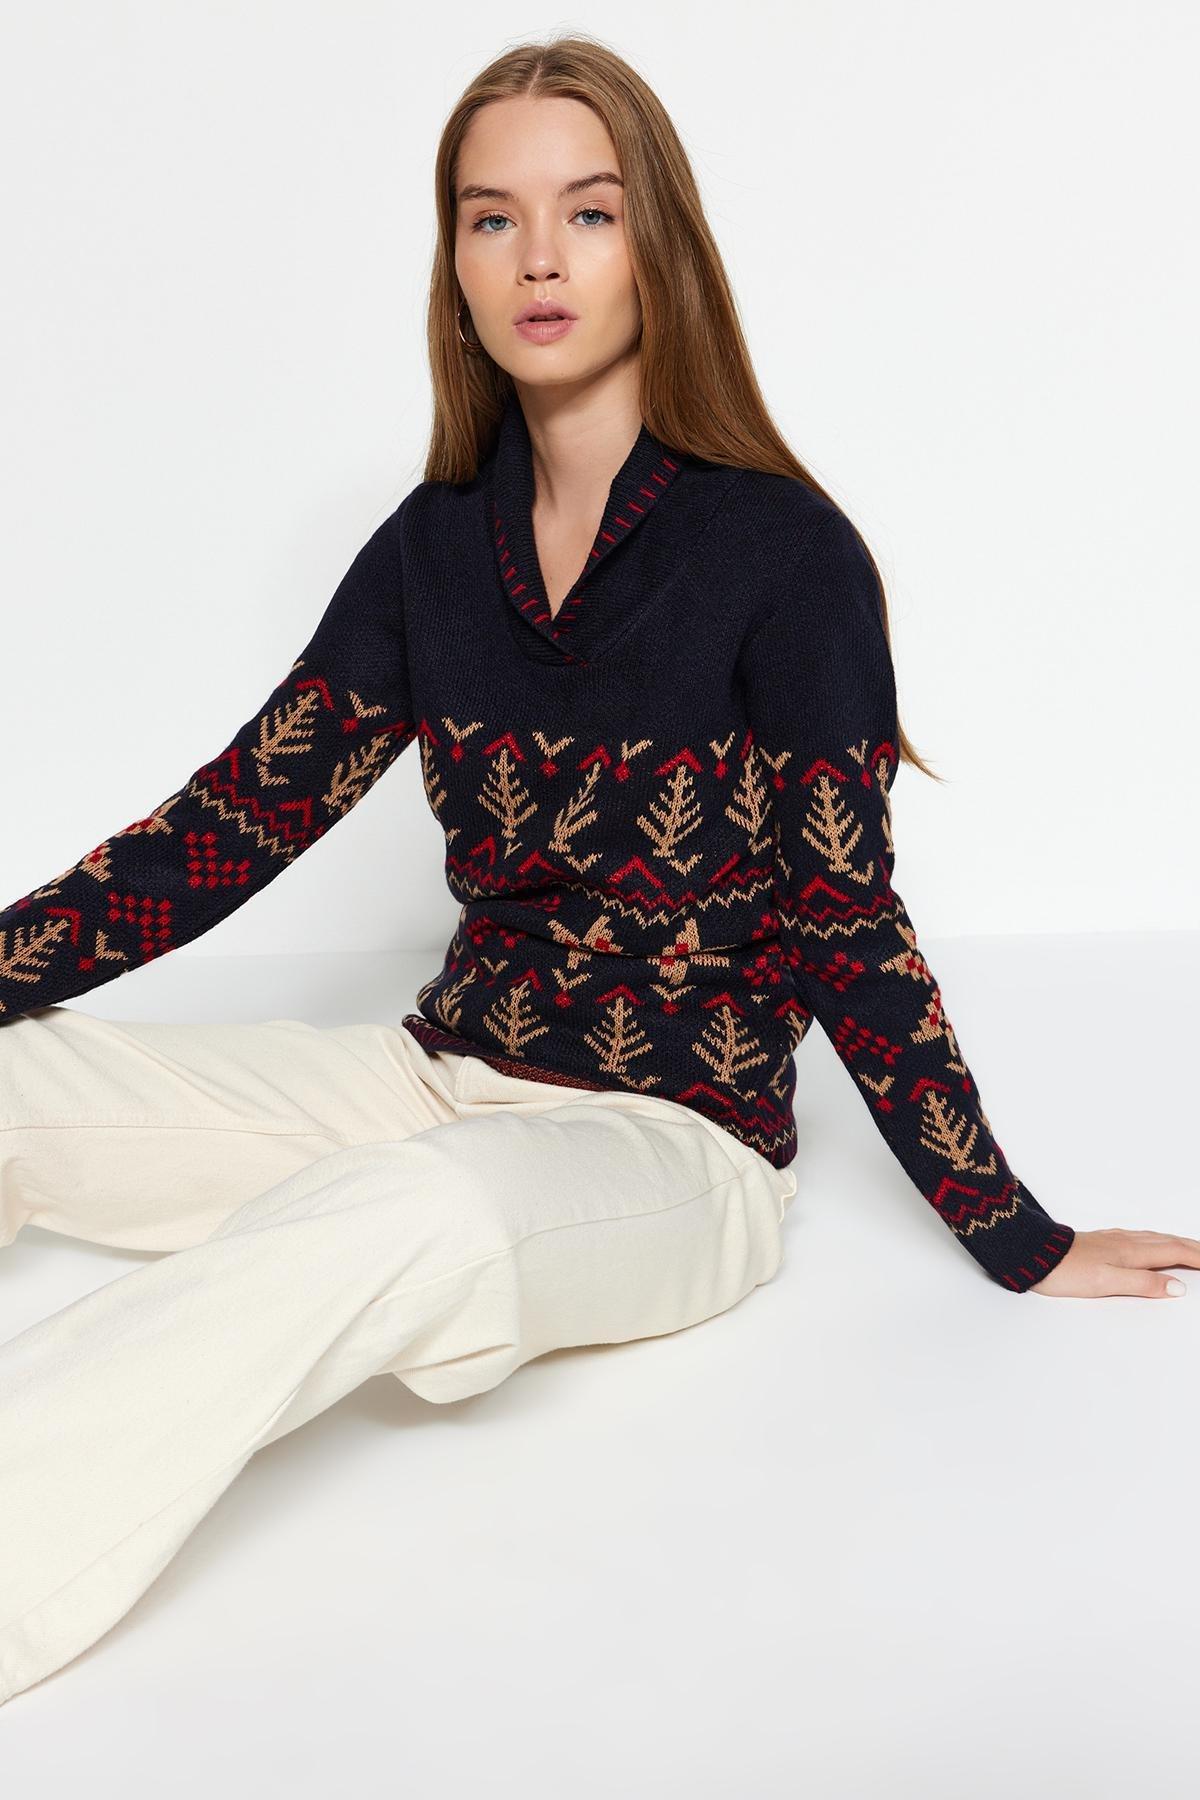 Trendyol - Blue Textured Patterned Knitwear Sweater